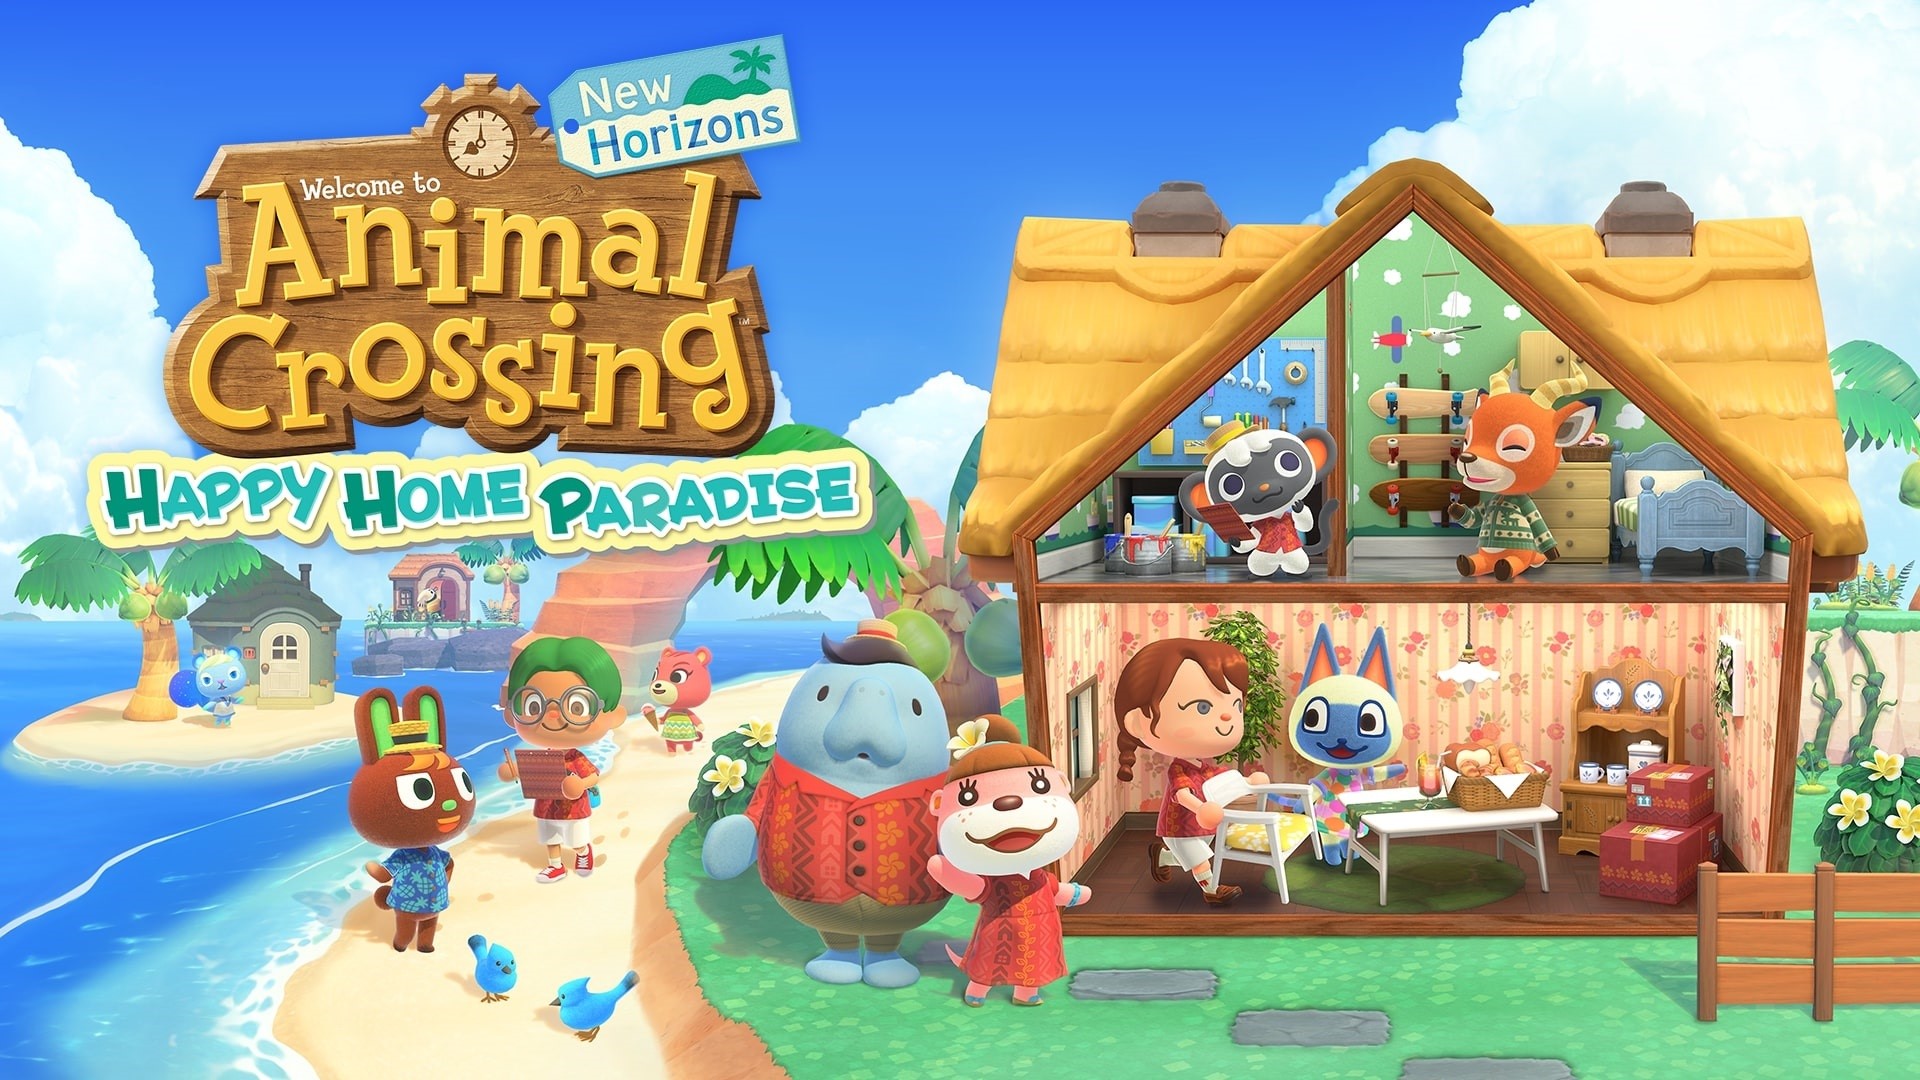 15-10-2021 Animal Crossing: New Horizons - Happy Home Paradise.
POLITICA INVESTIGACIÓN Y TECNOLOGÍA
NINTENDO
